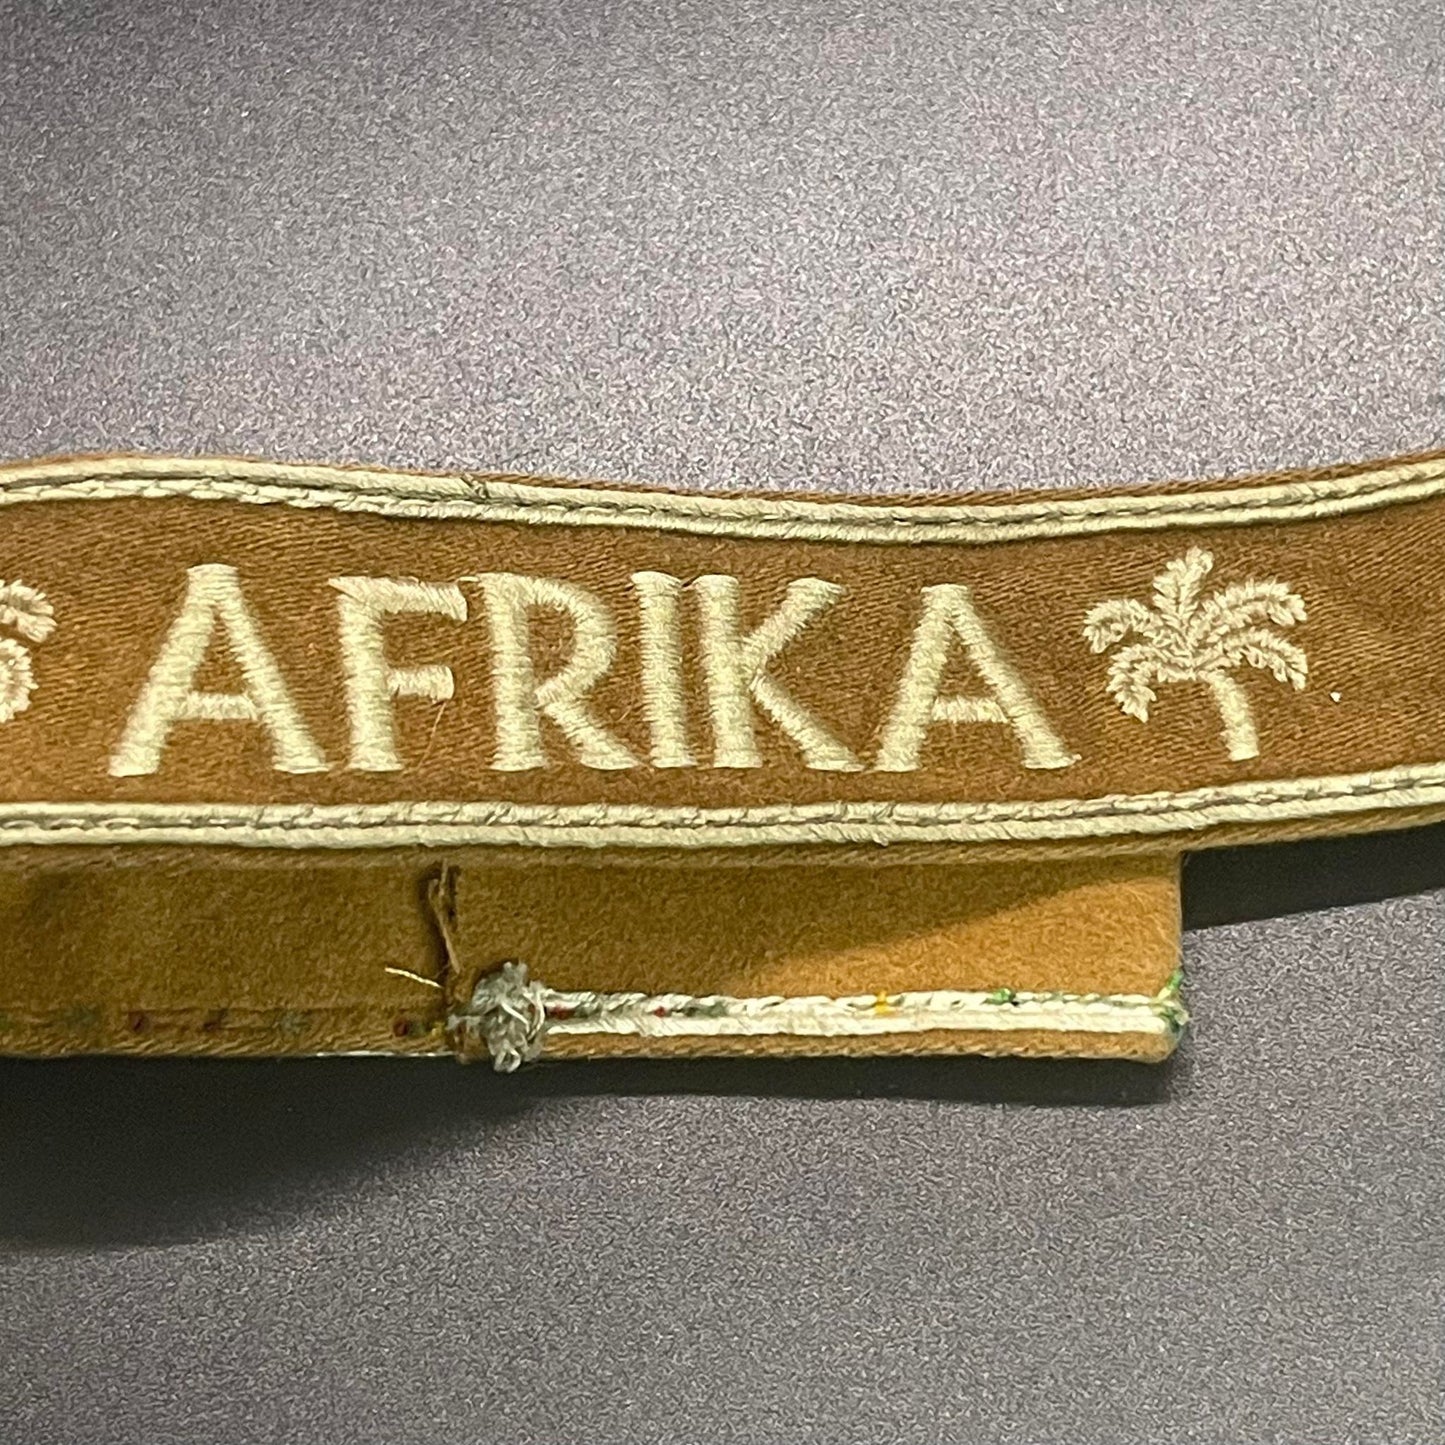 GERMAN WW2 DEUTSCHE AFRIKA KORPS (DAK) UNIFORM REMOVED CUFF TITLE